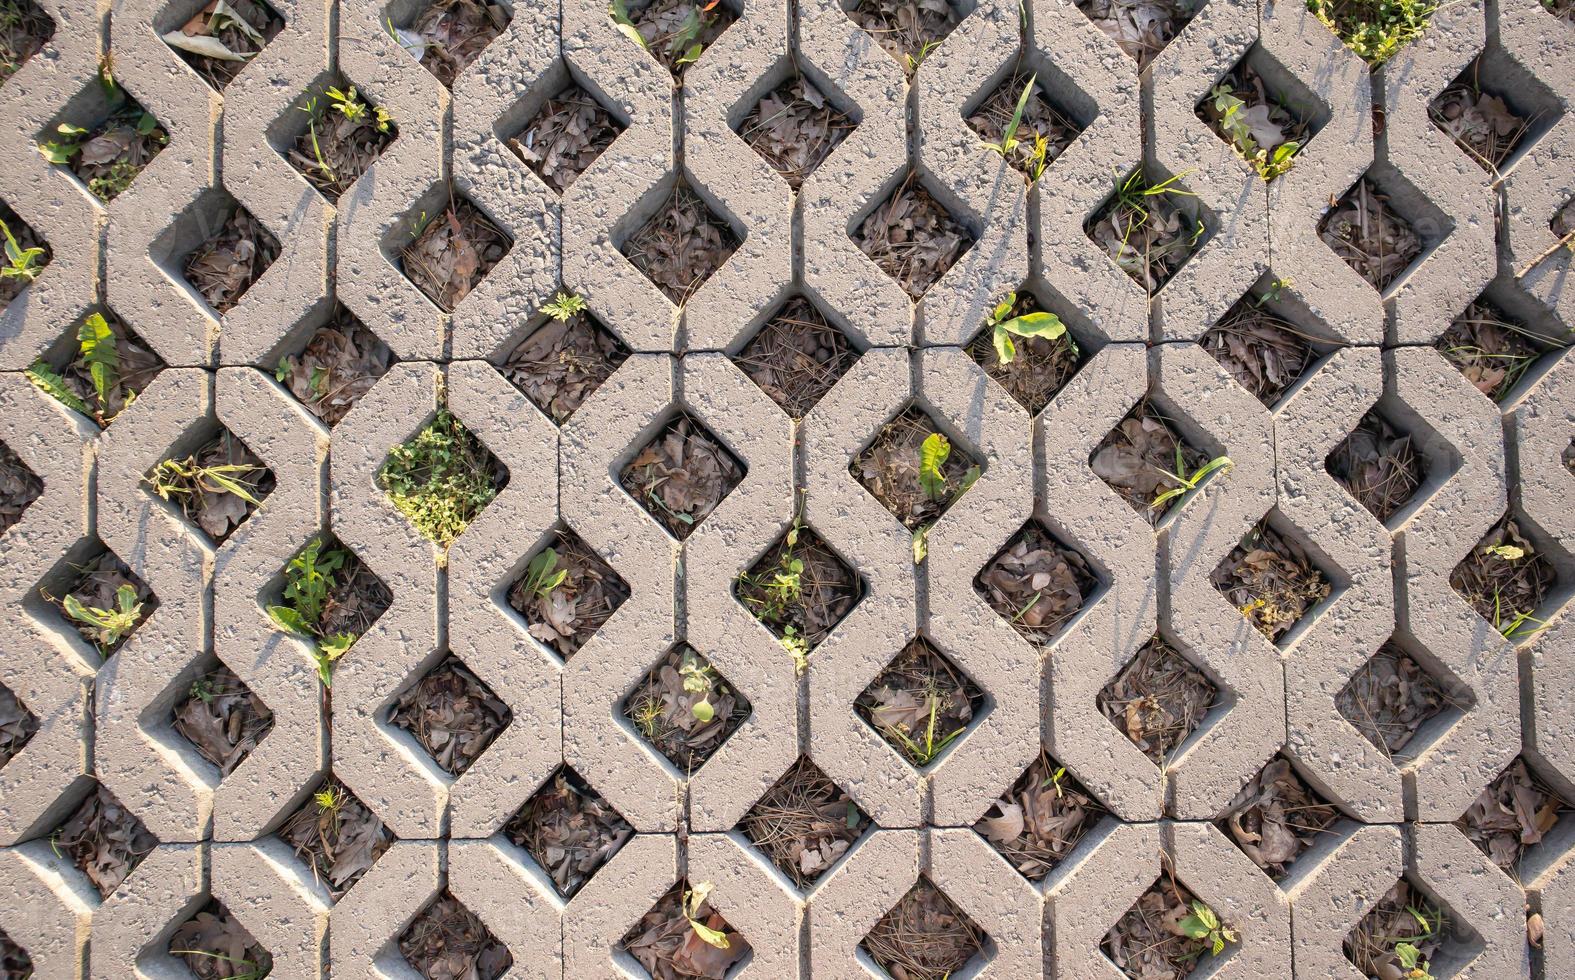 fond de dalles de pavage avec de l'herbe poussant à travers eux. carreaux de pierre sur le trottoir. sentier. fond à motifs texturé. revêtement écologique - caillebotis en béton. photo